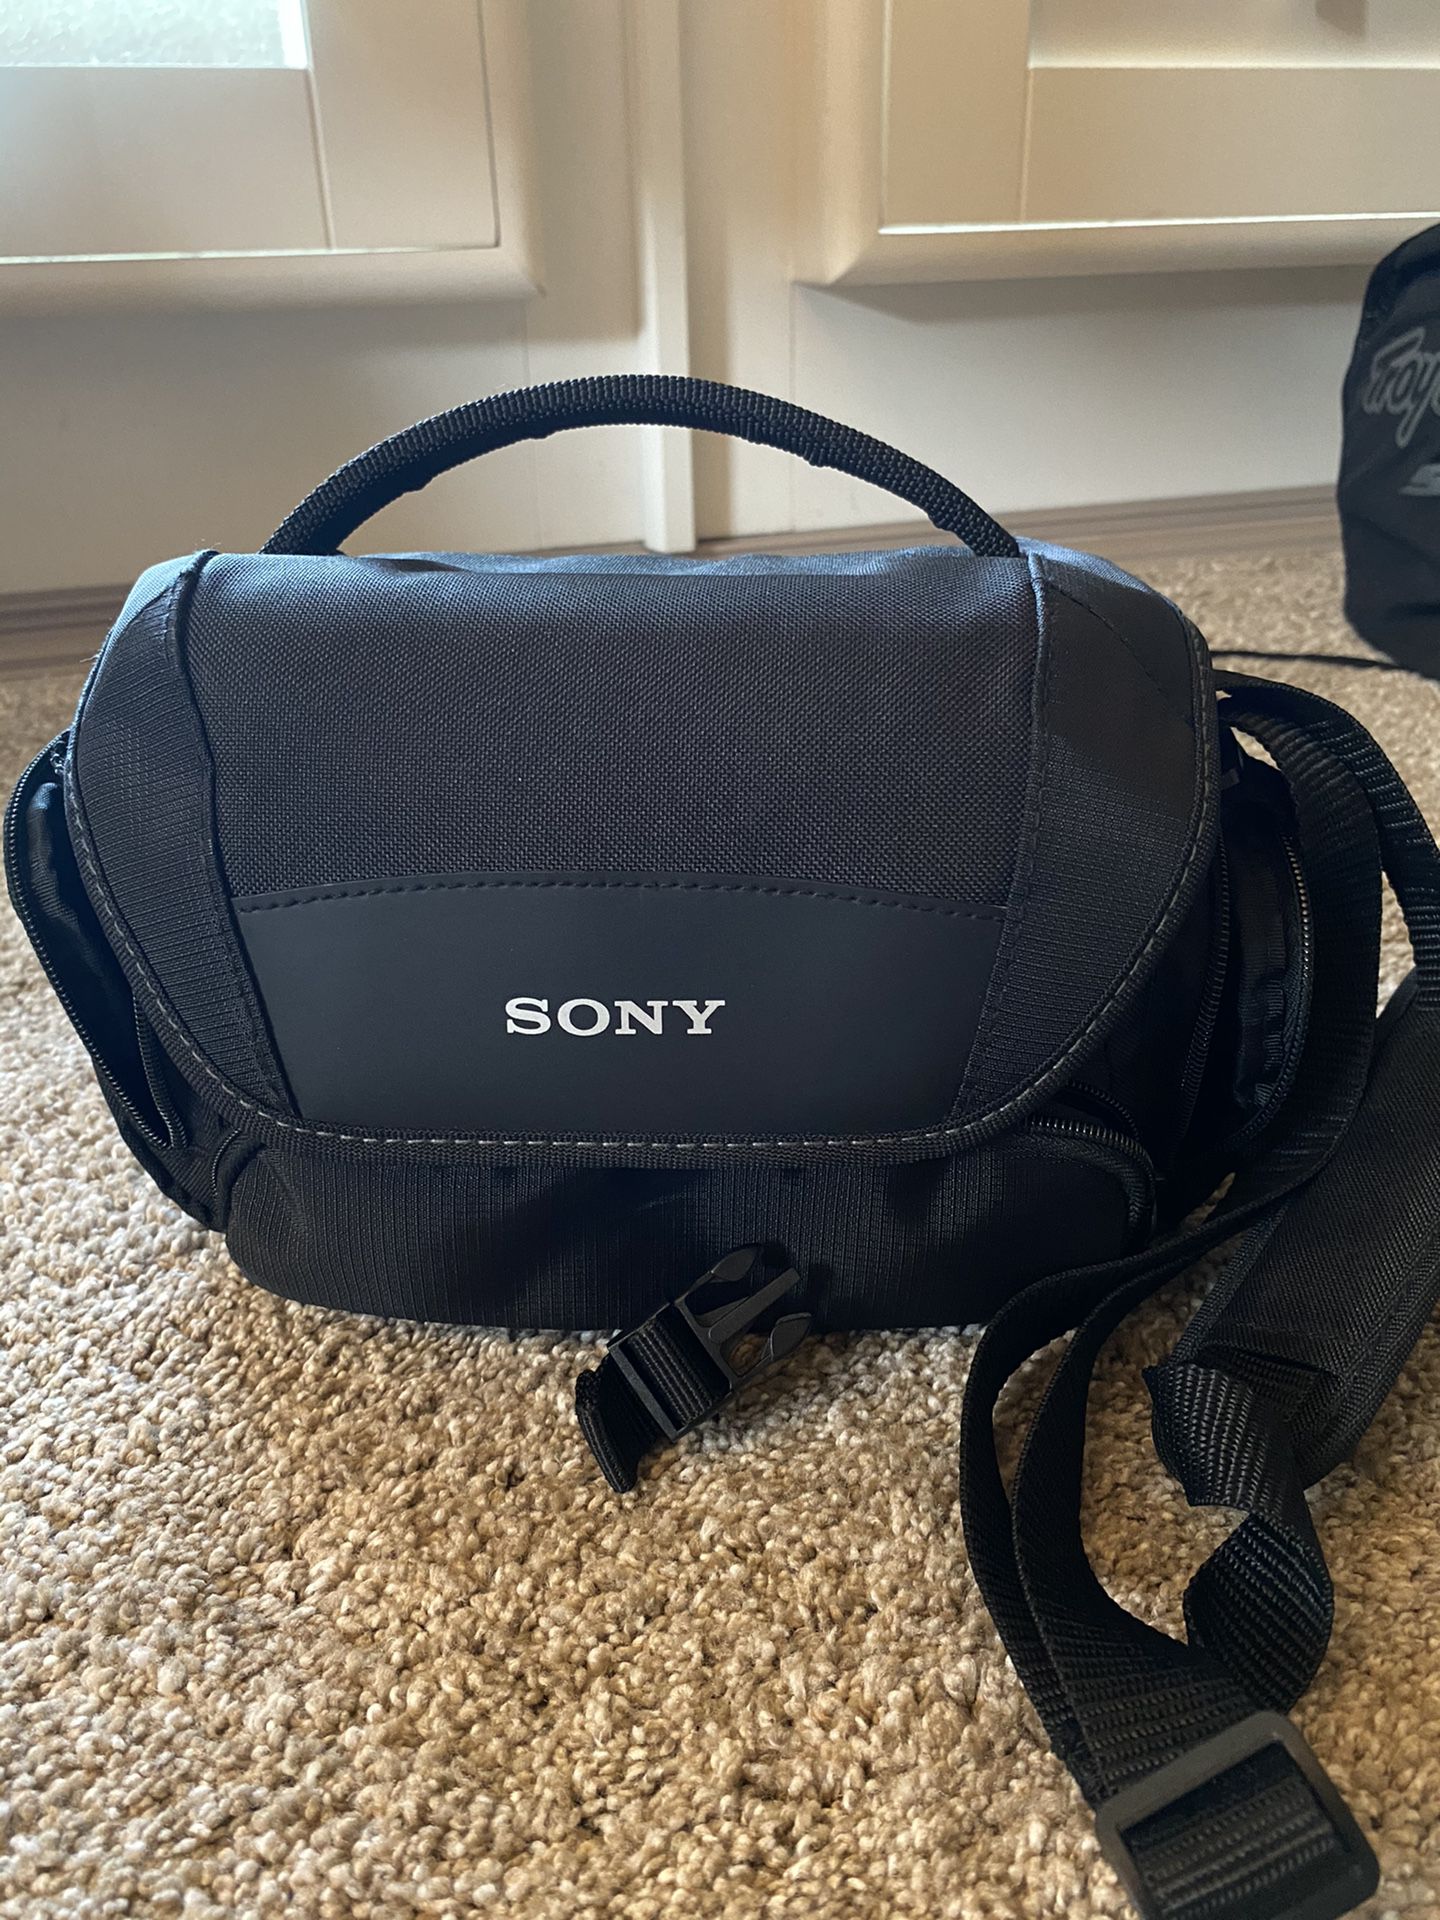 Sony camera bag (BRAND NEW)